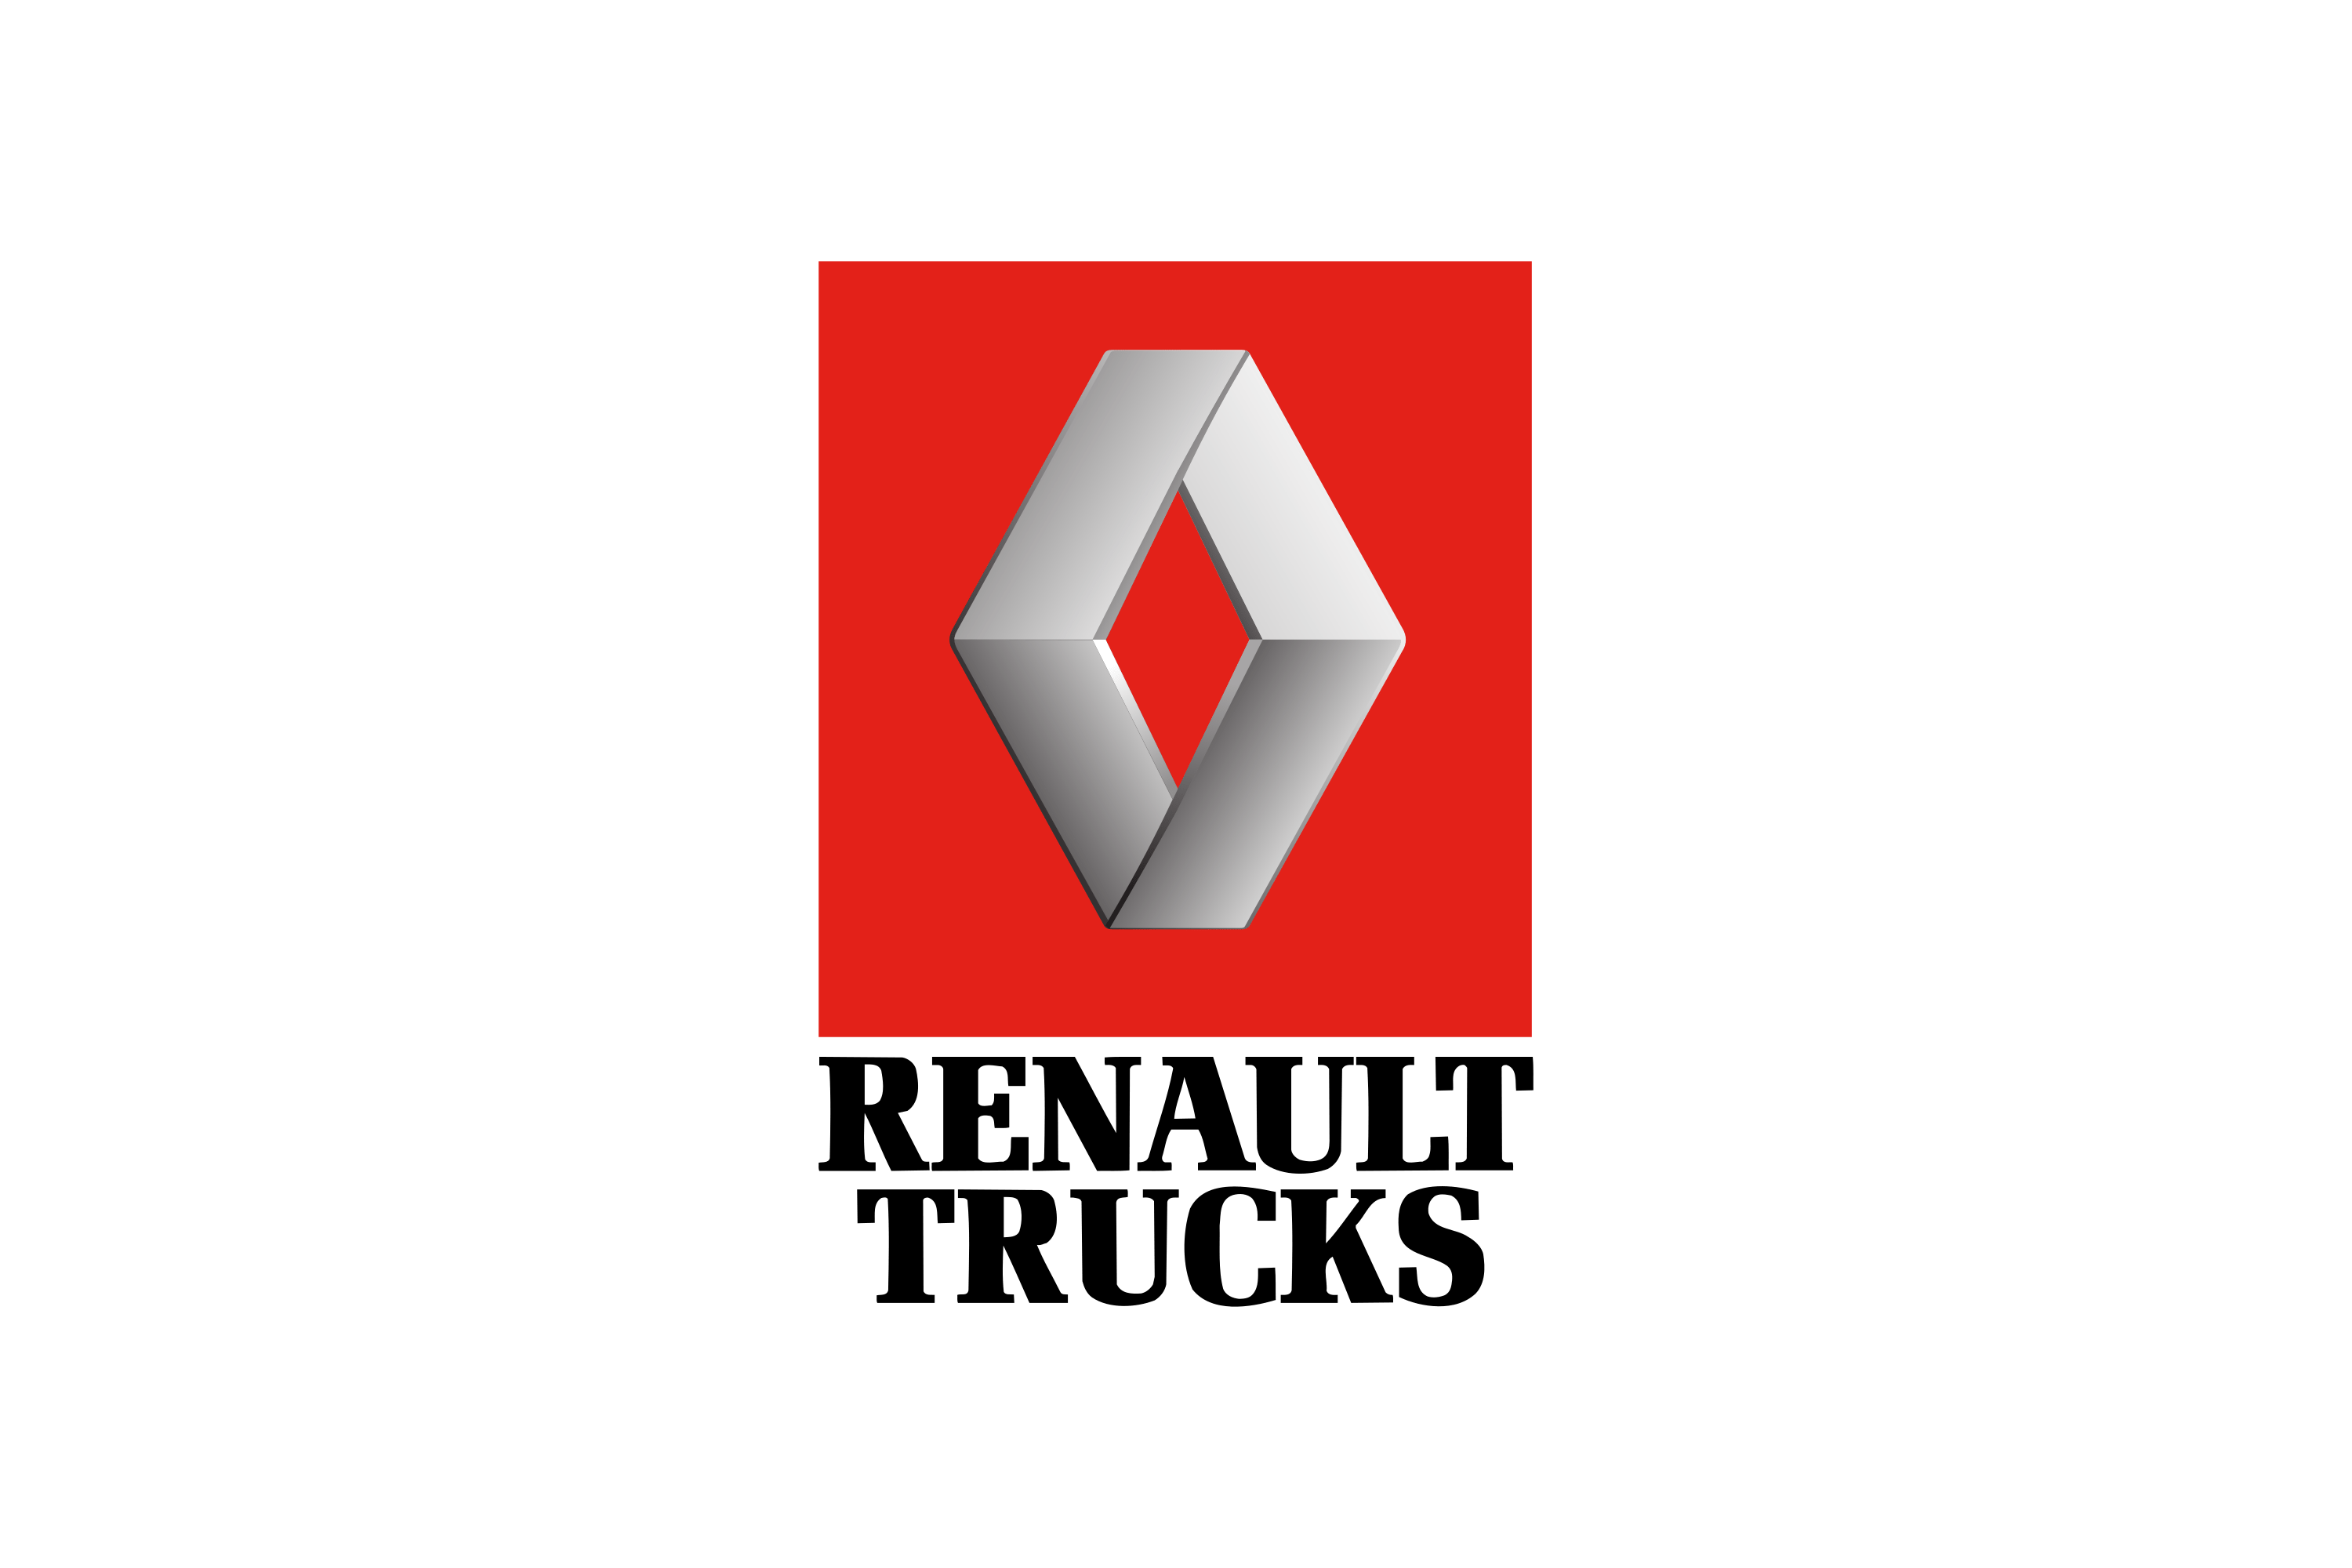 Download Renault Trucks Logo in SVG Vector or PNG File Format 